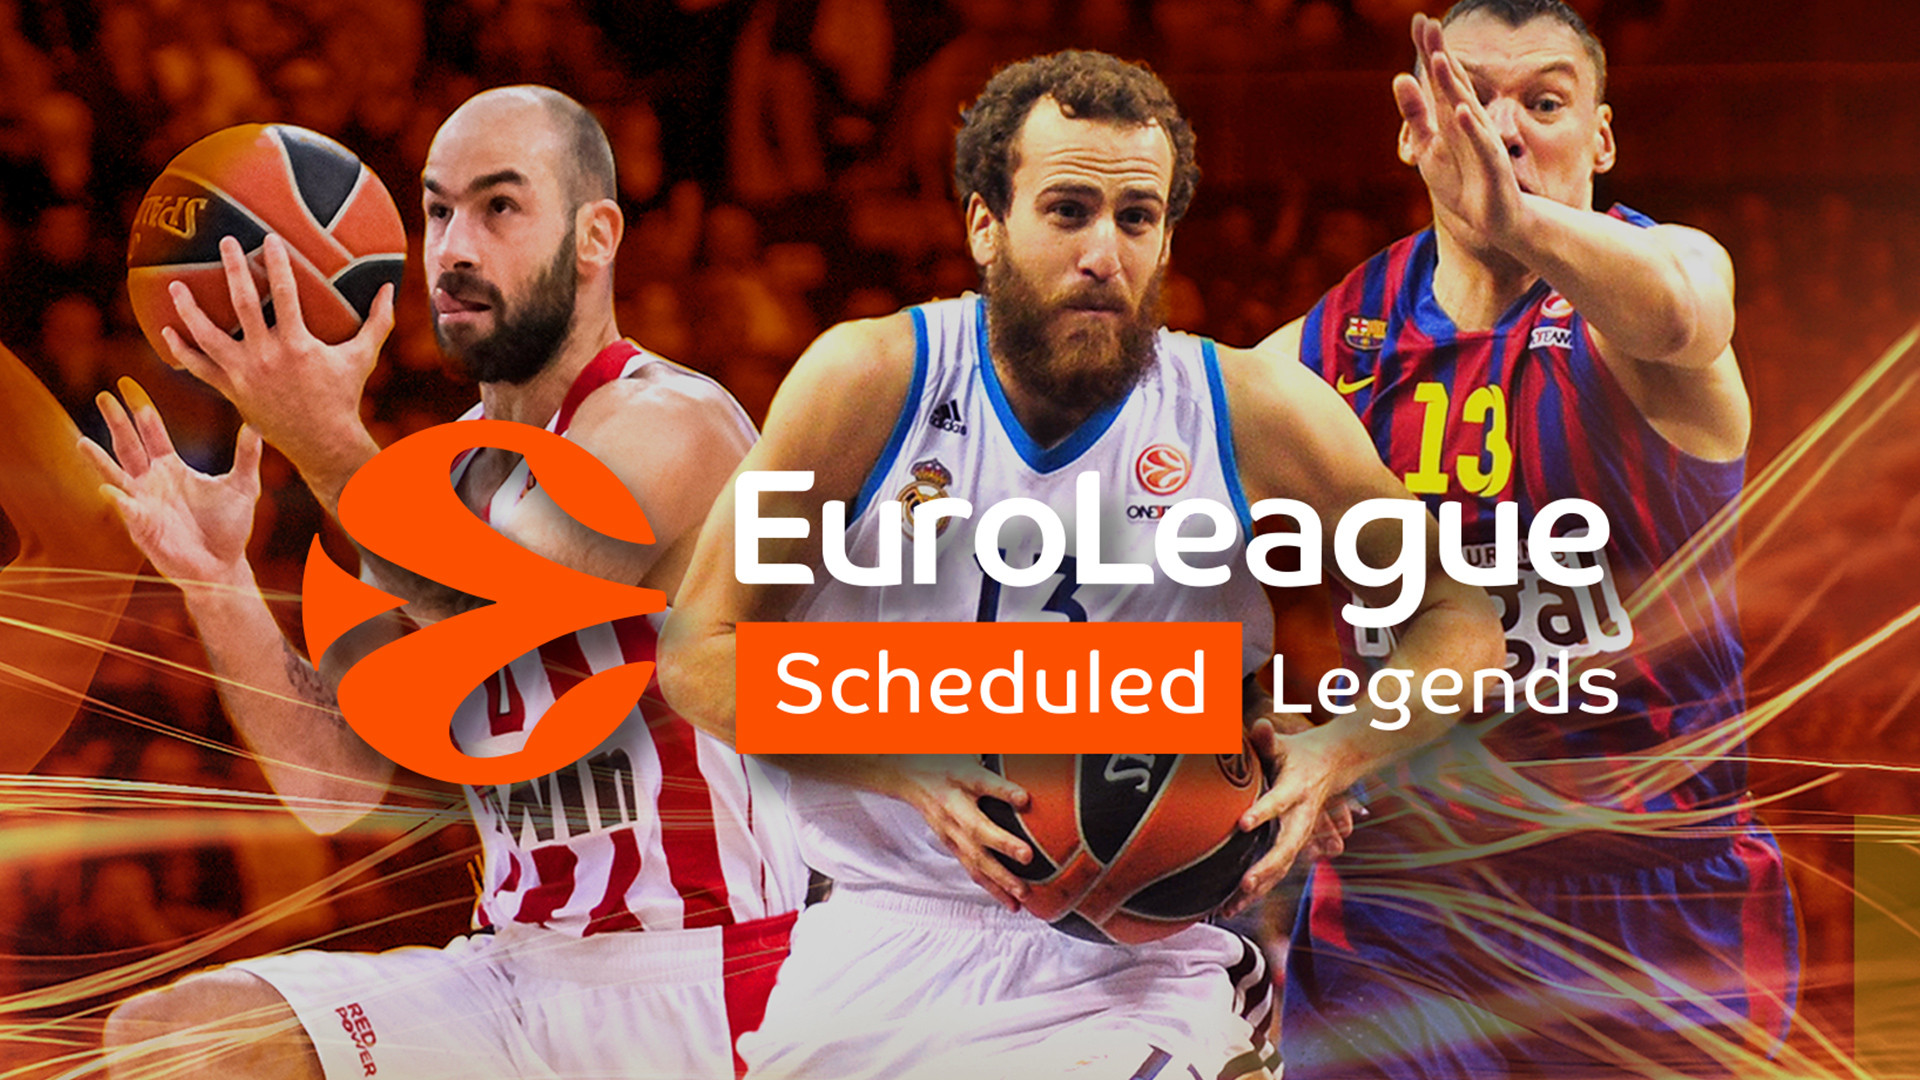 Euroleague Scheduled Legends